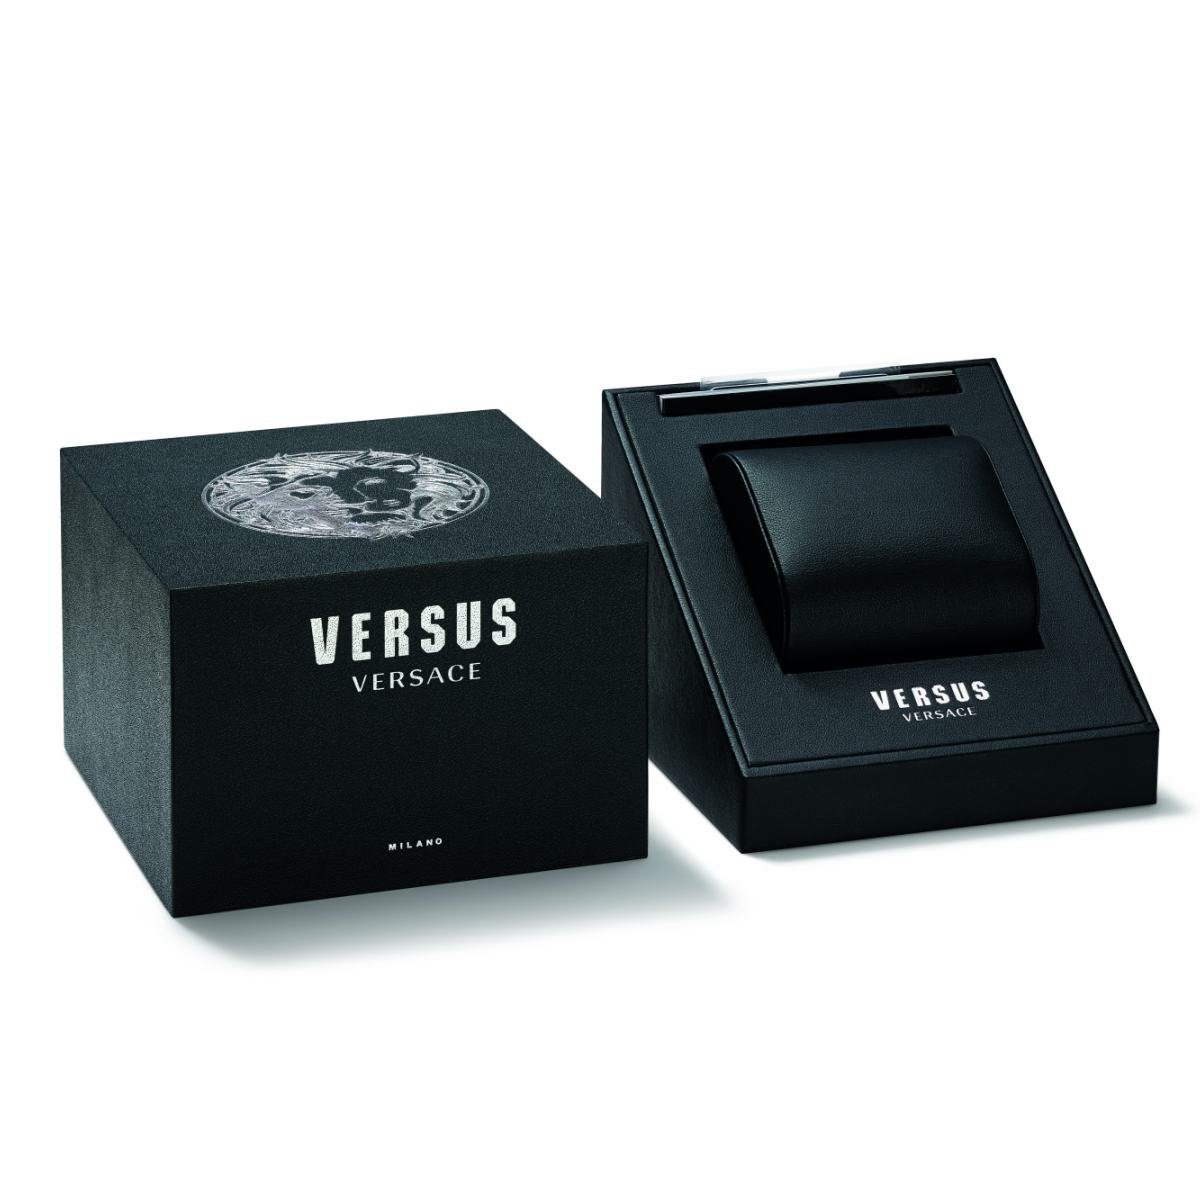 Versus Versace VSP263821 Quarzuhr